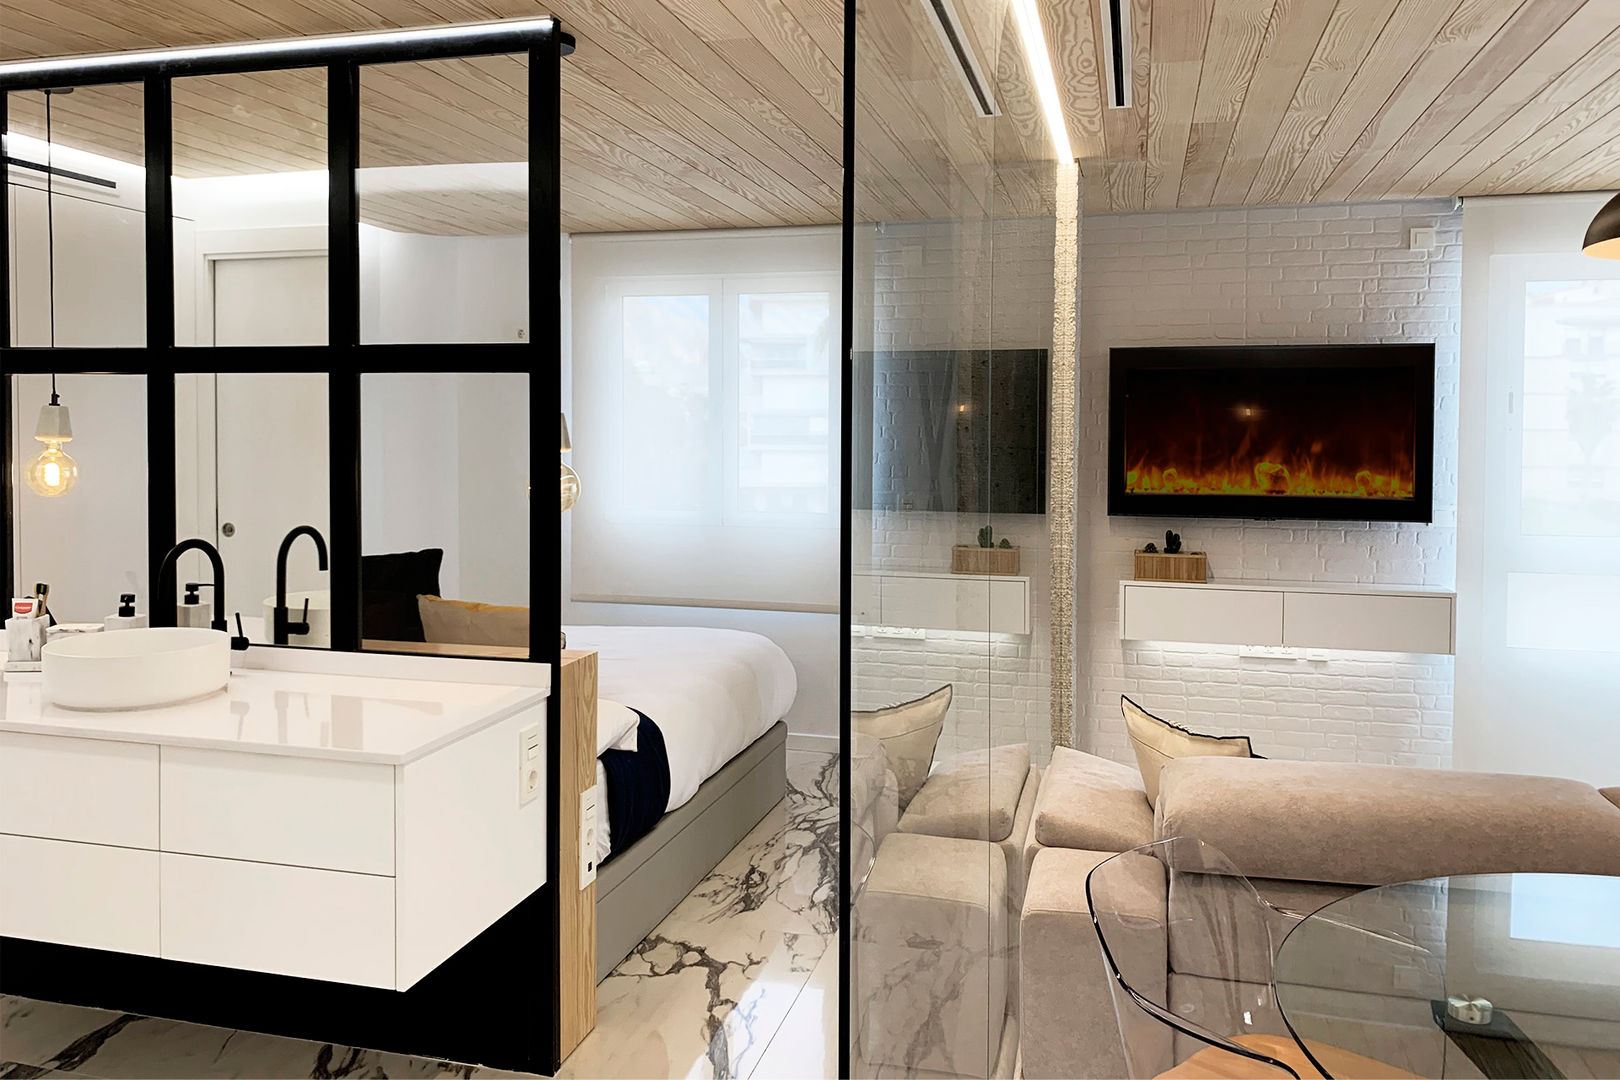 Baño DISENA studio Baños de estilo minimalista